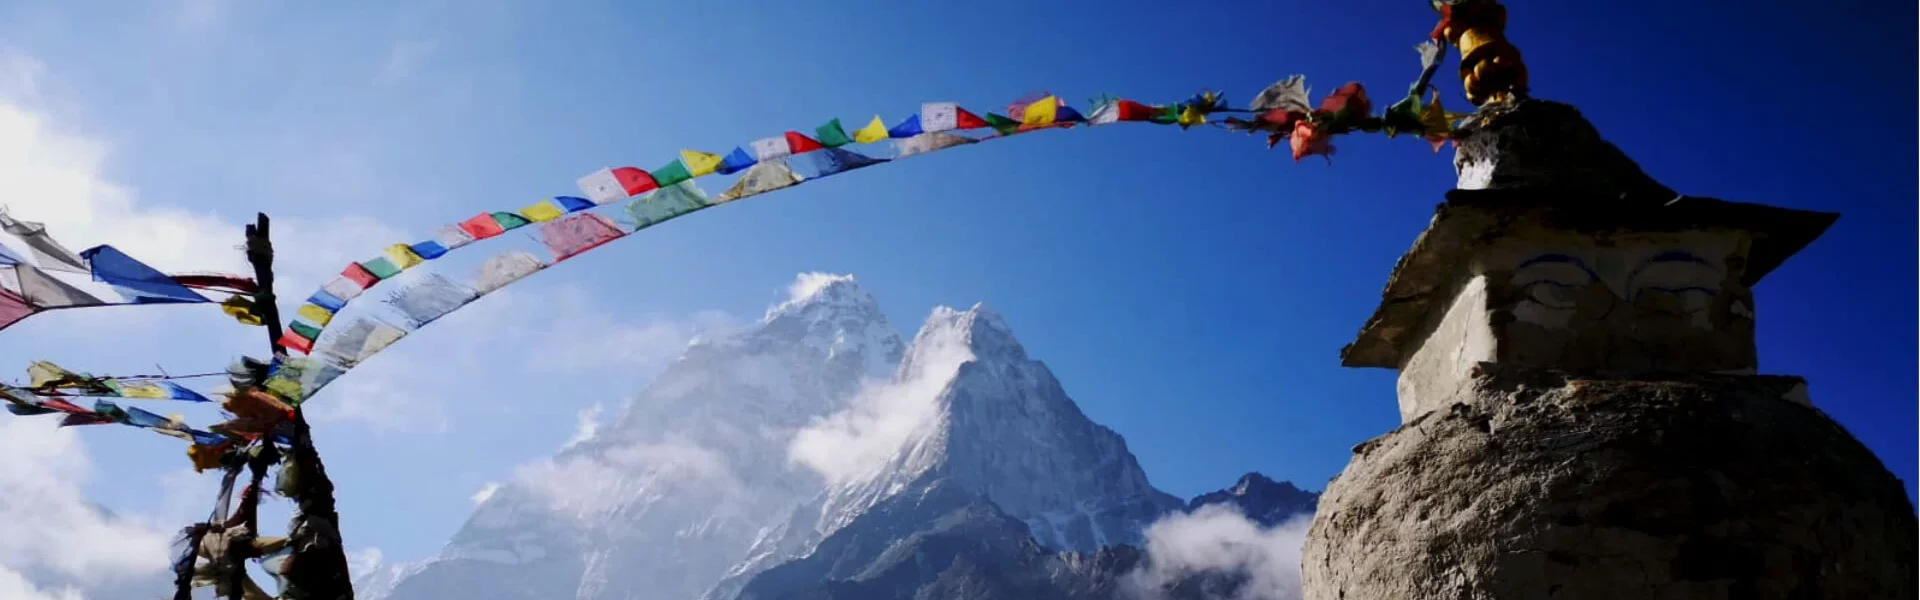 Everest Region – Essential Info